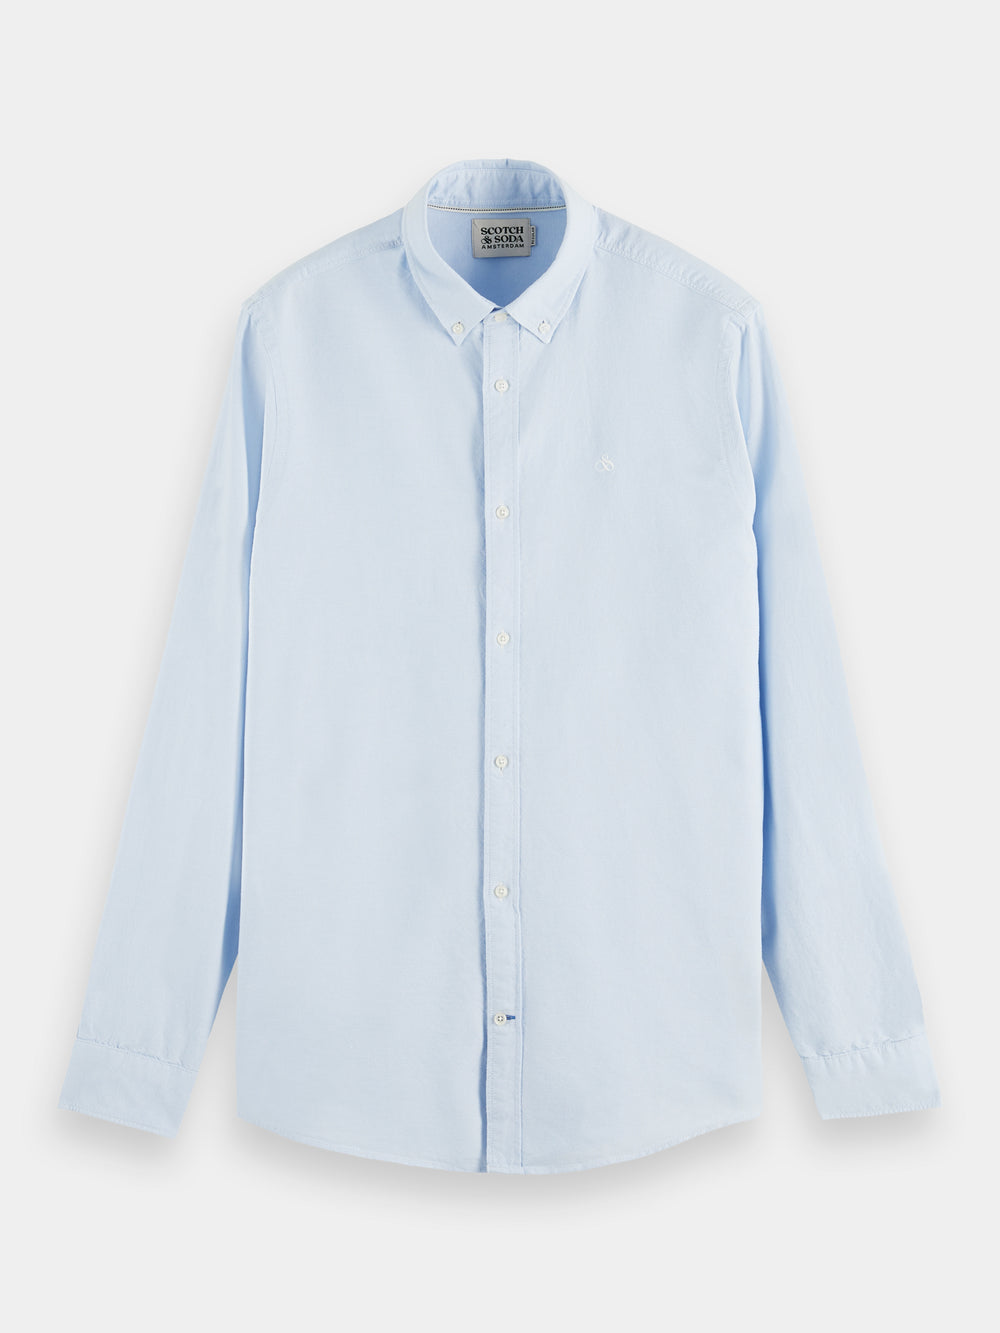 Organic cotton/elastane oxford shirt – Scotch & Soda AU